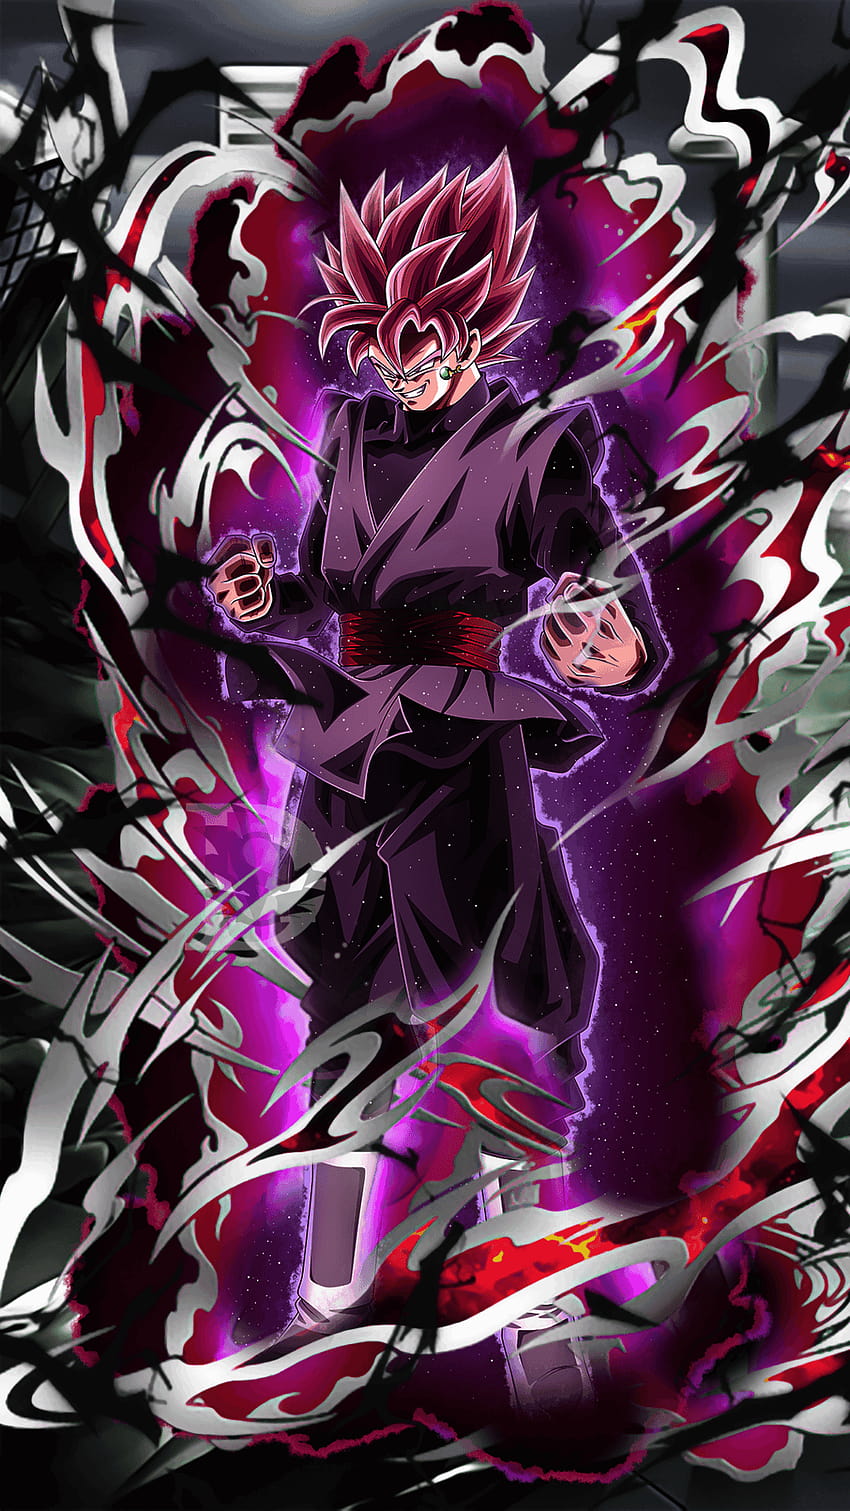 Goku Black on Dog, aesthetic black goku HD phone wallpaper